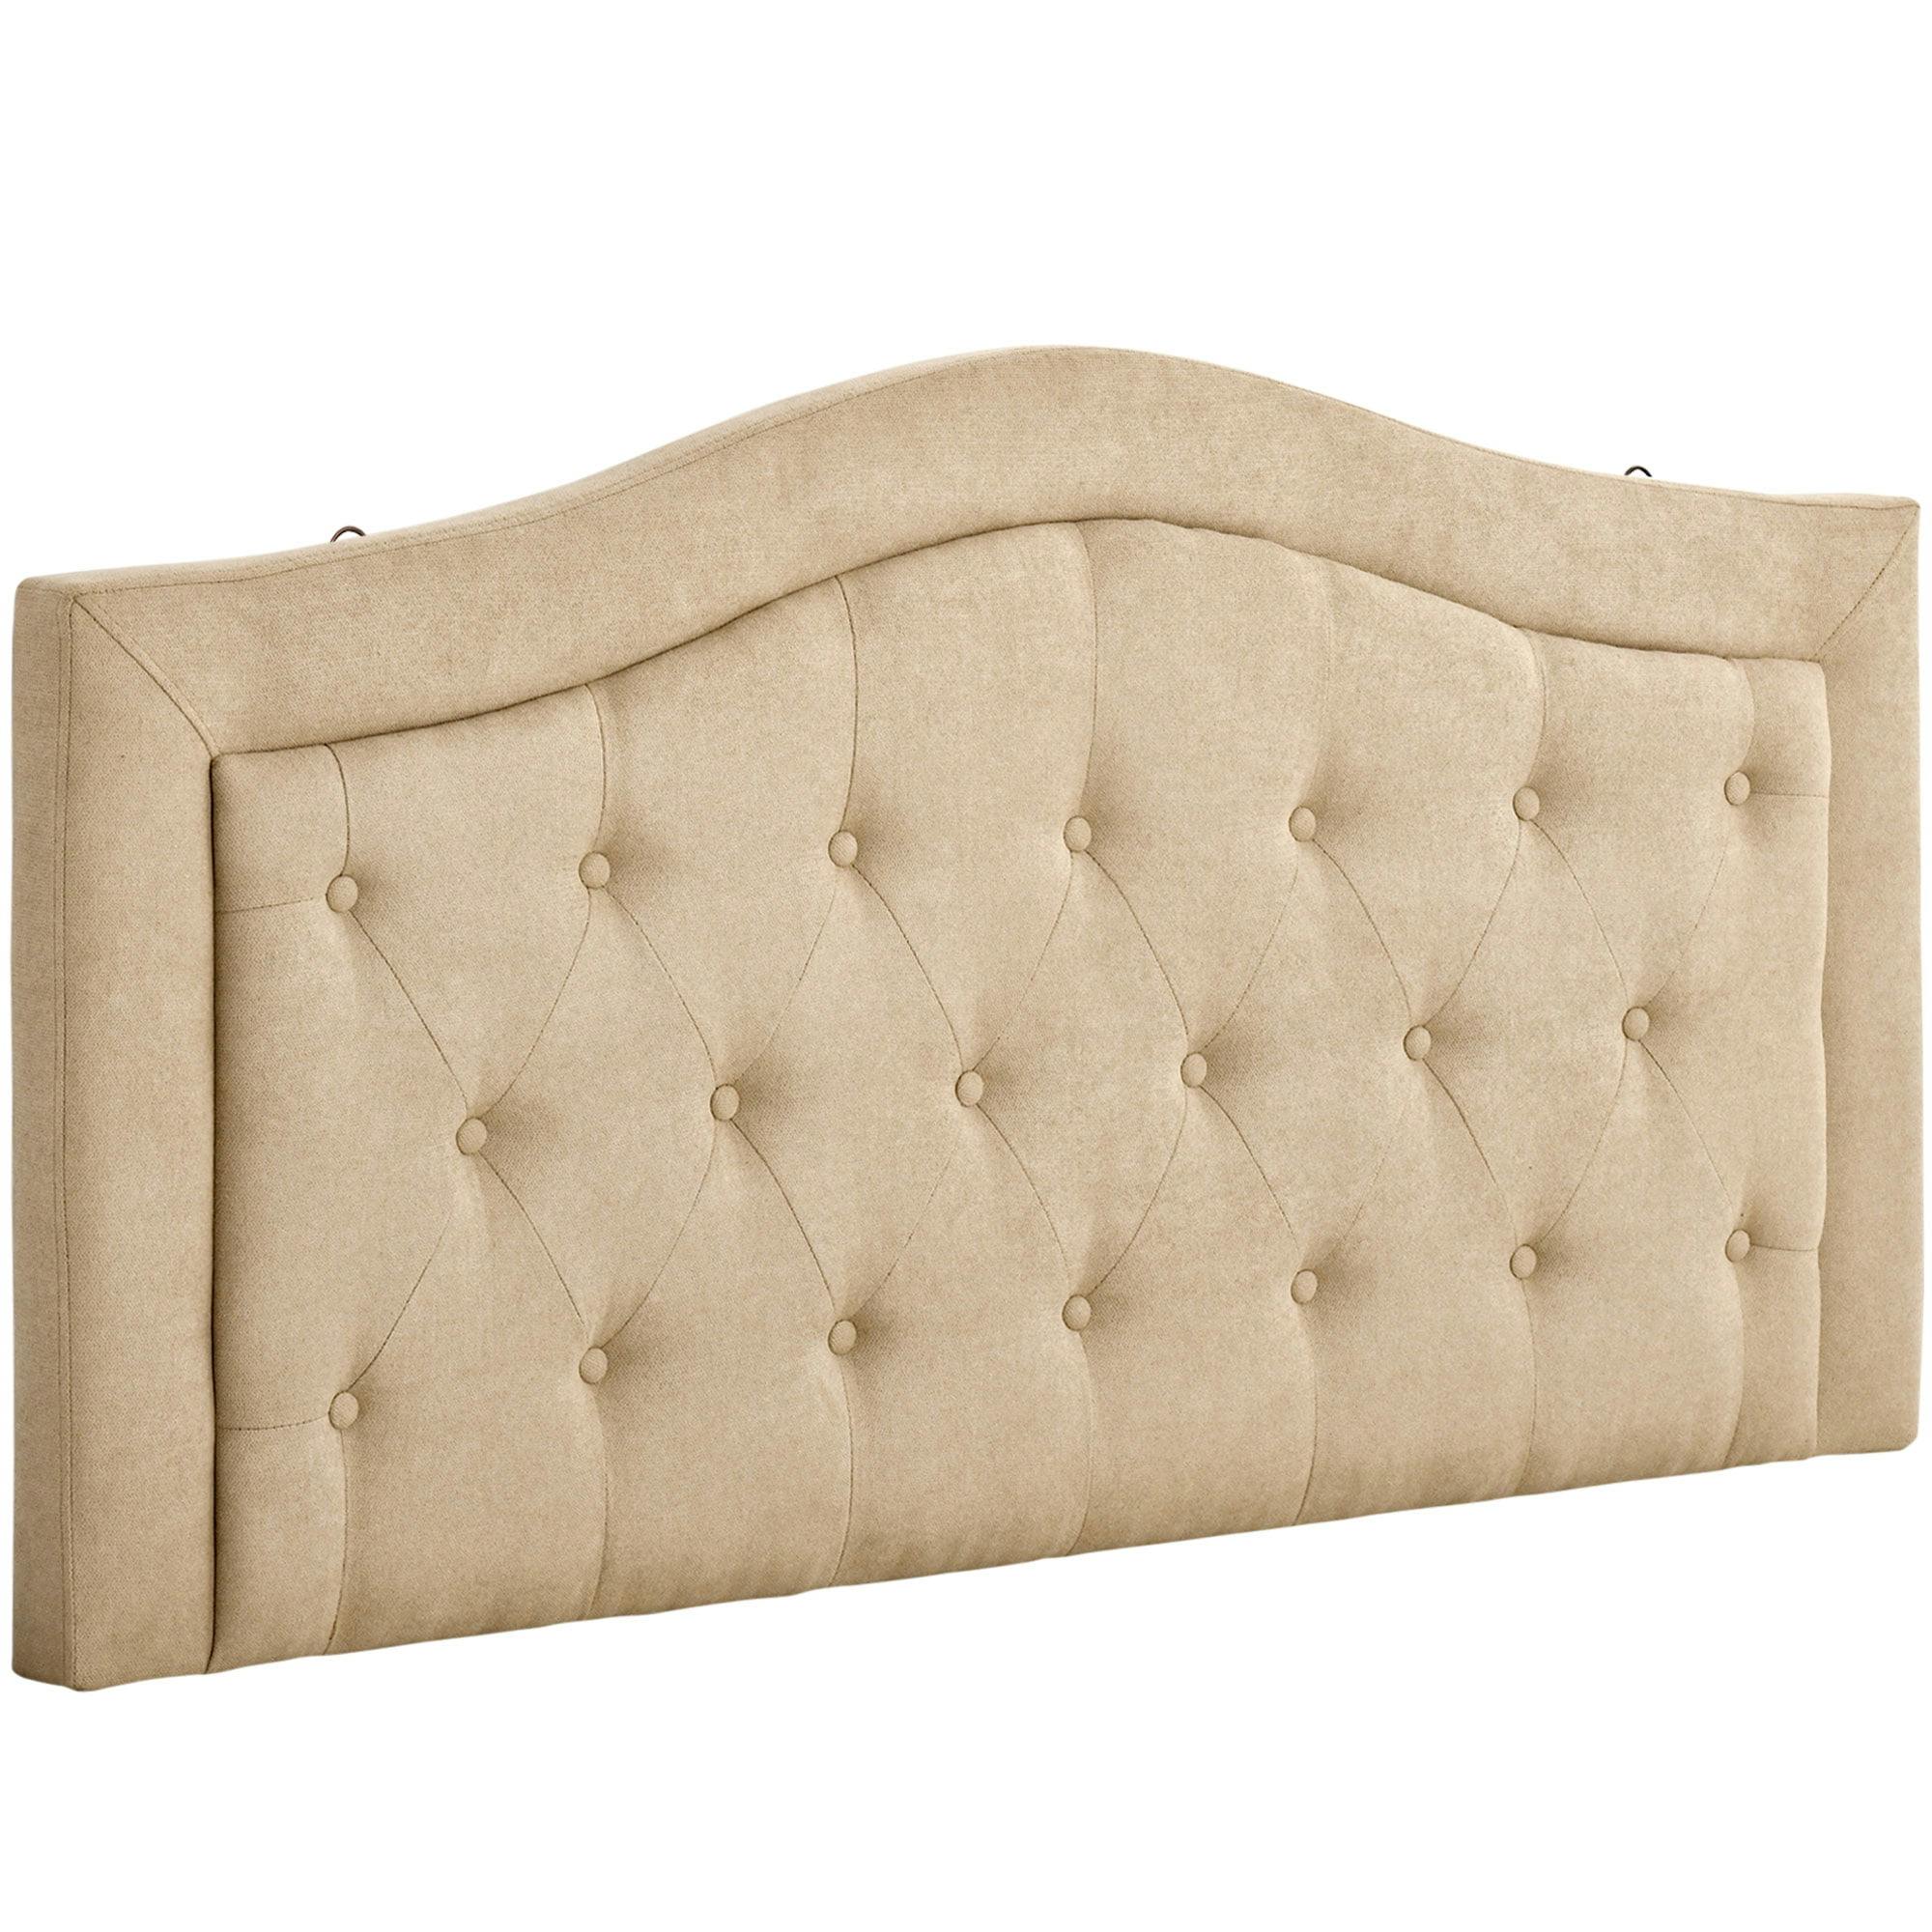 Elegant Beige Full-Size Tufted Upholstered Headboard